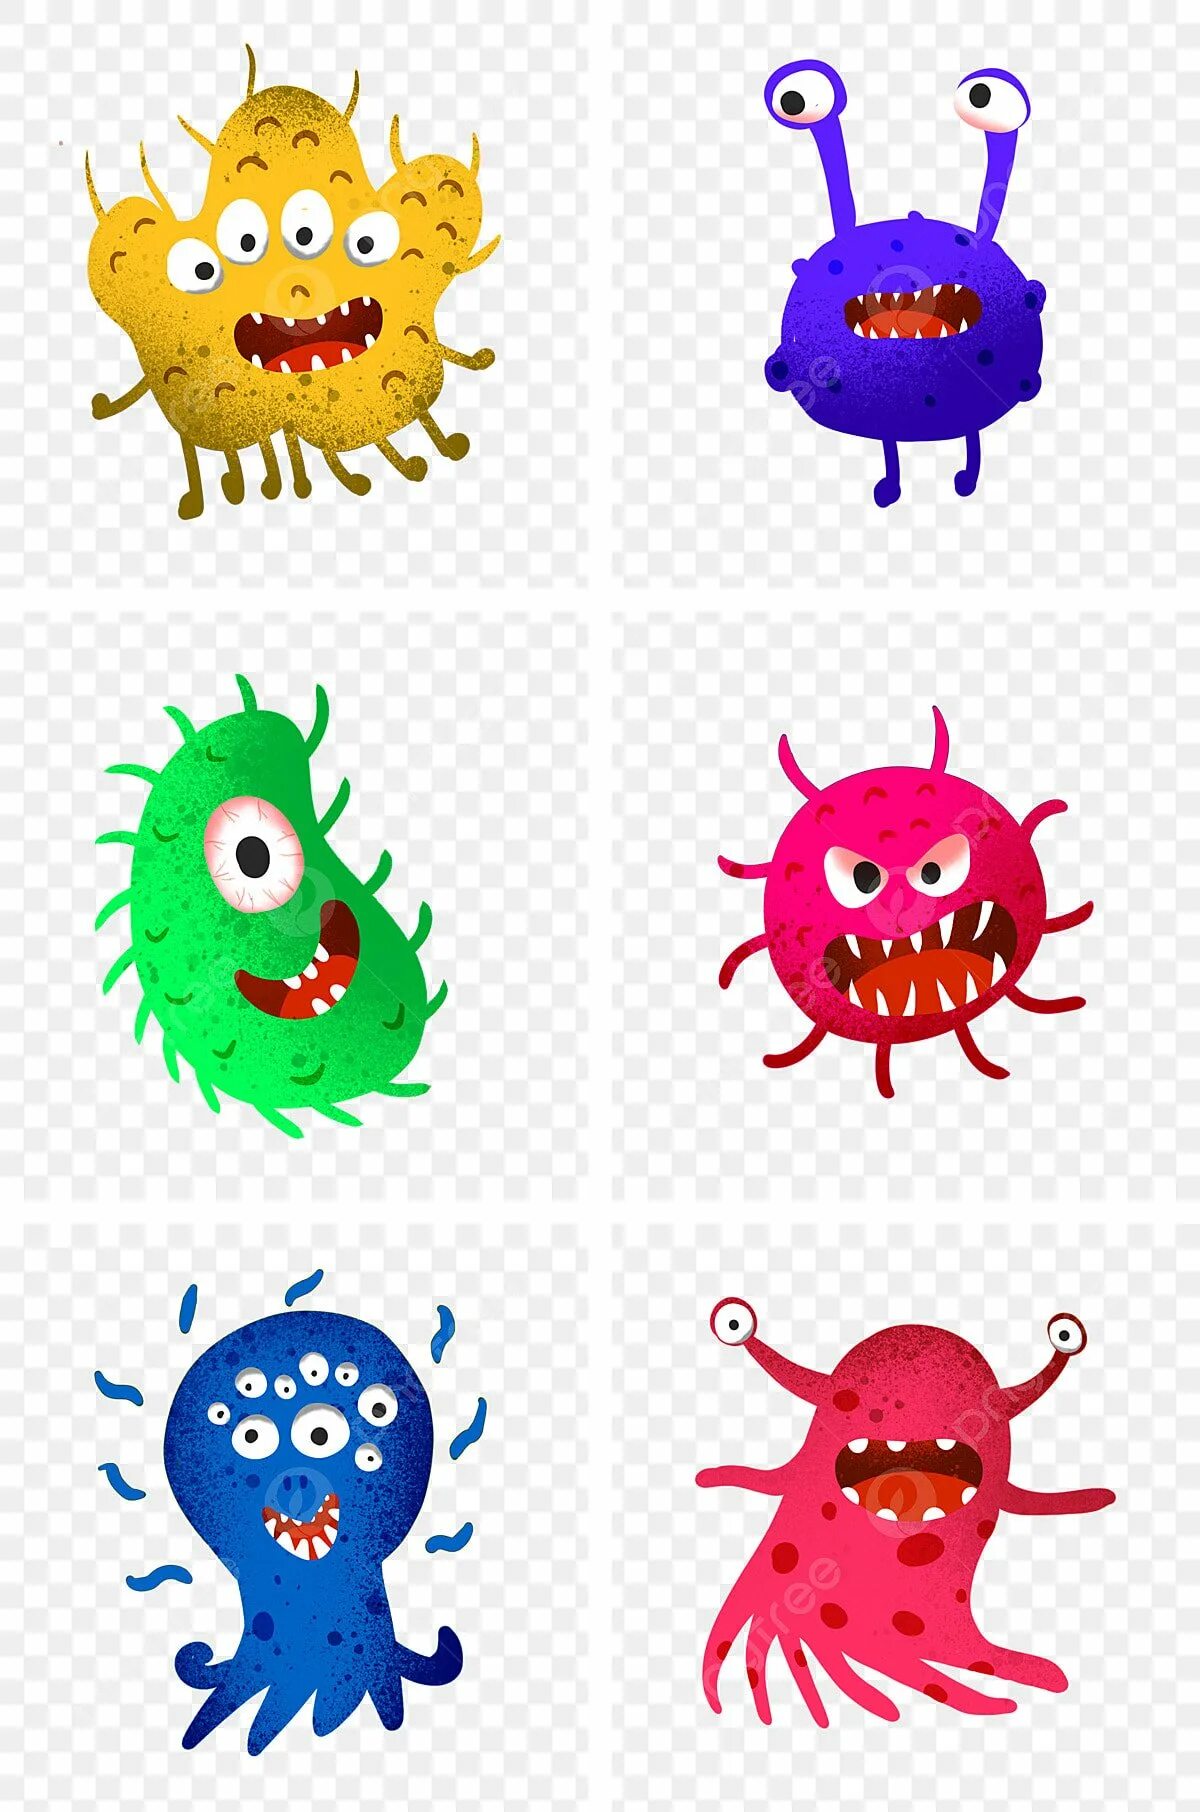 Микробы вирусы бактерии. Вирусы бактерии микробы. Вирусы и бактерии иллюстрация. Микробы мультяшные.